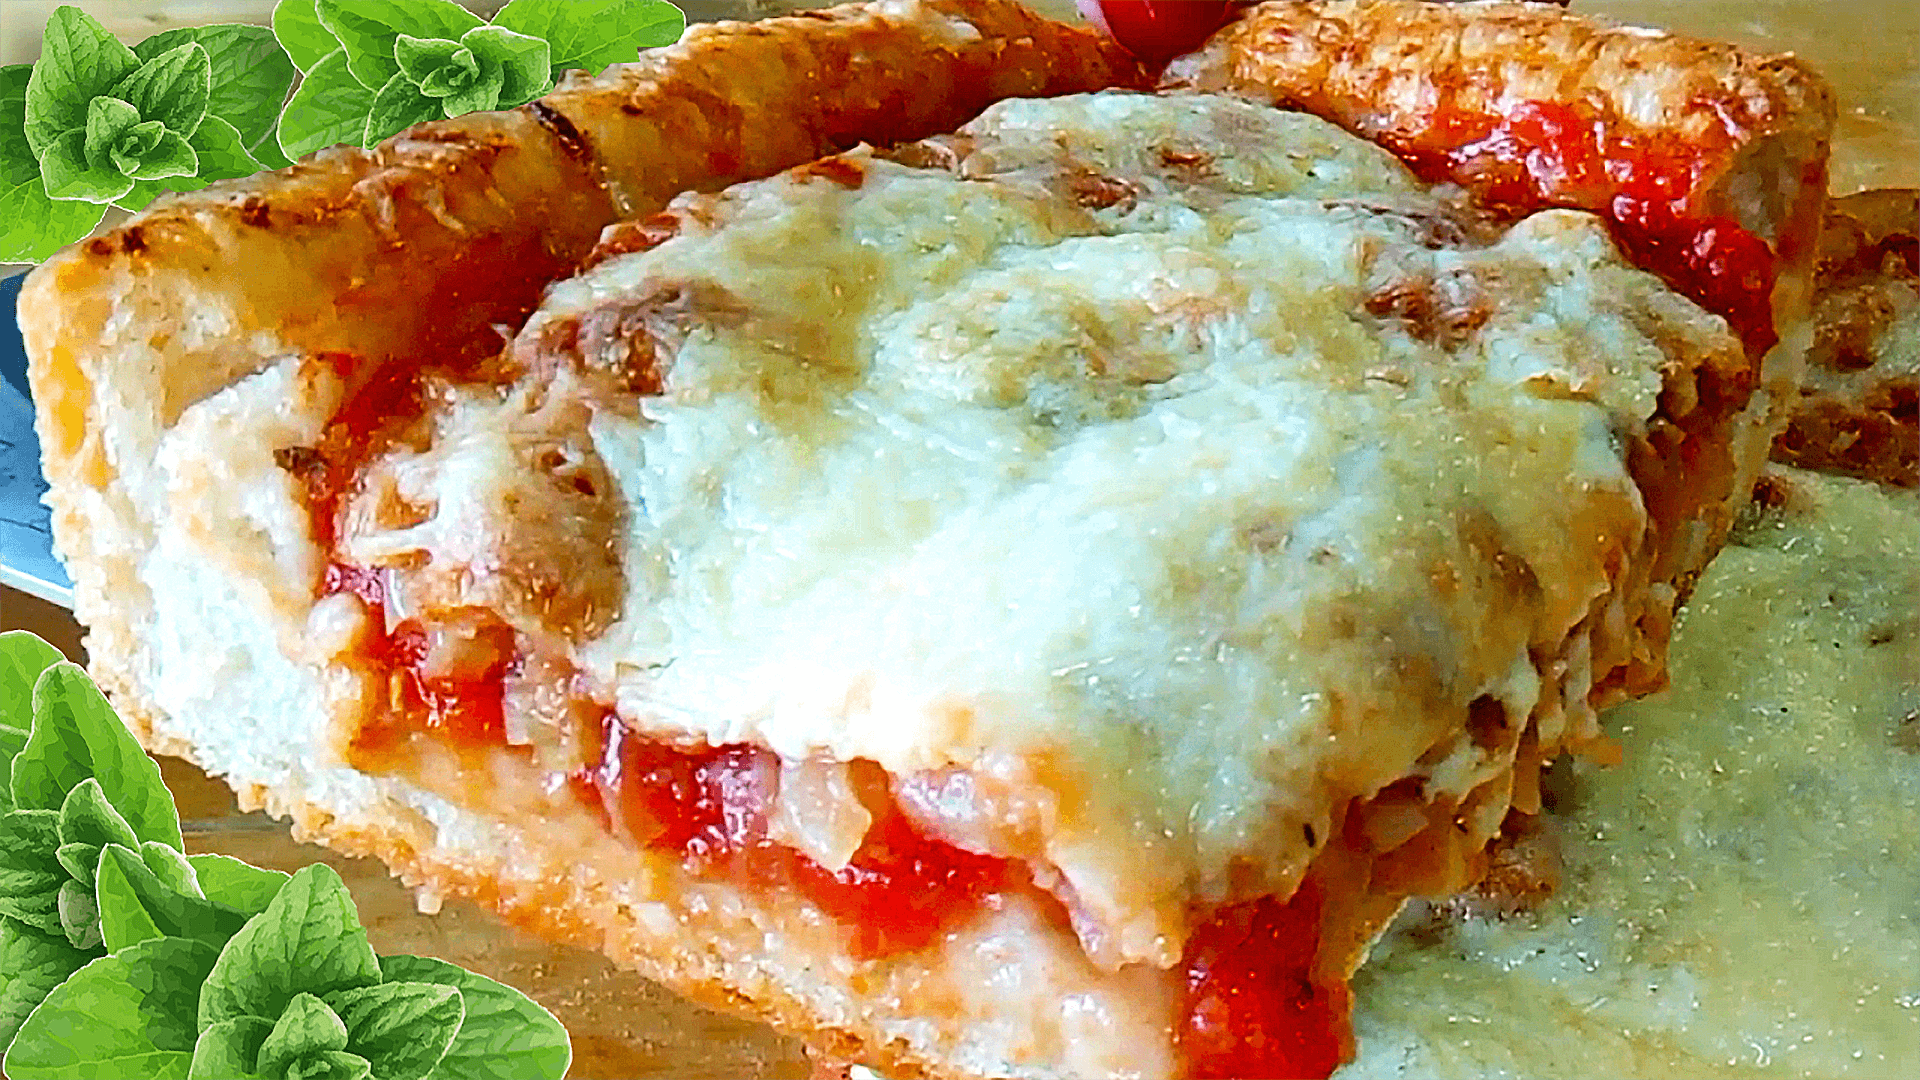 The Sicilian Pizza (Easy Homemade Pizza Recipe)